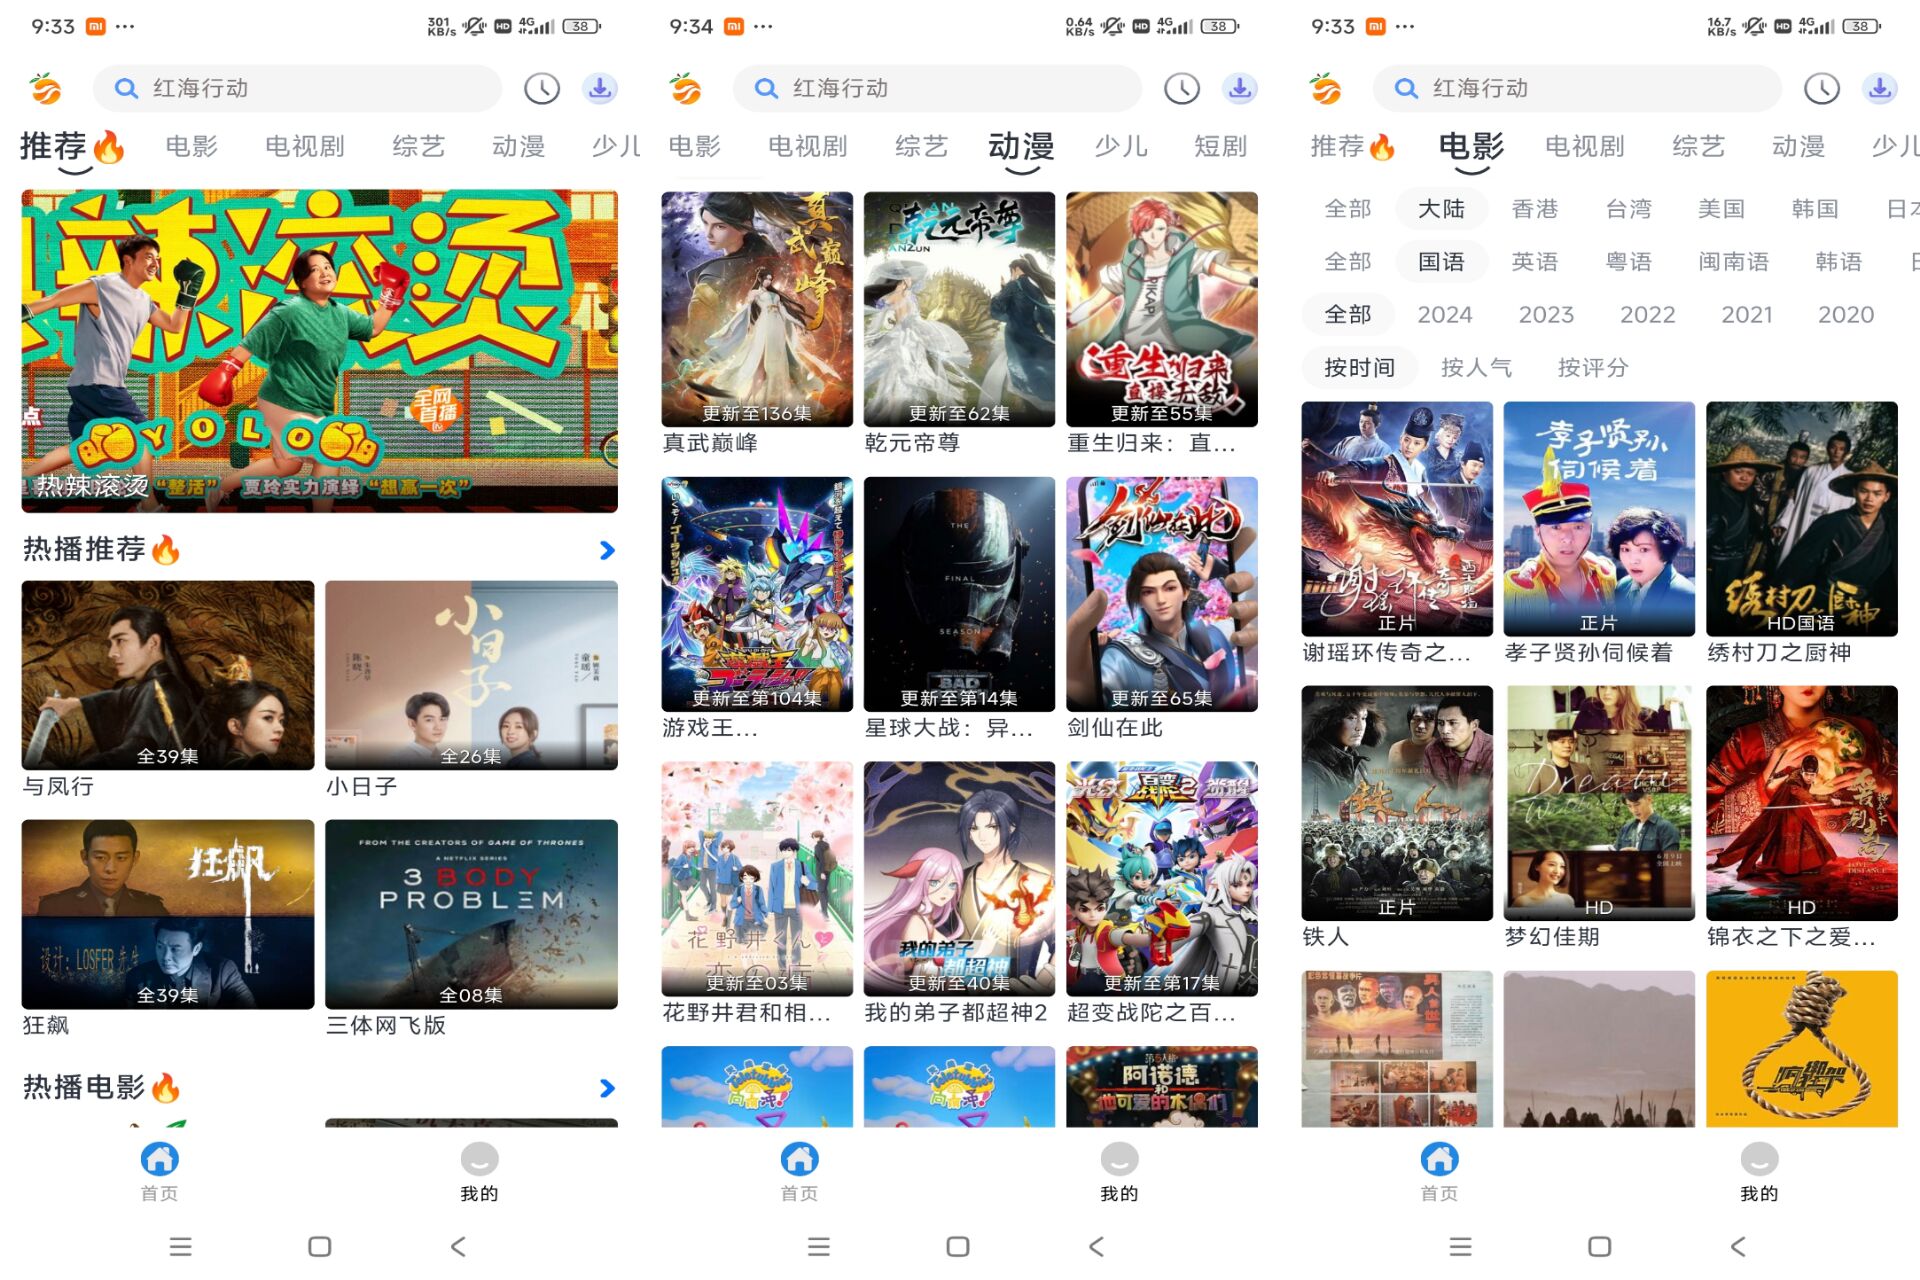 安卓南果影视视频App 多种线路播放